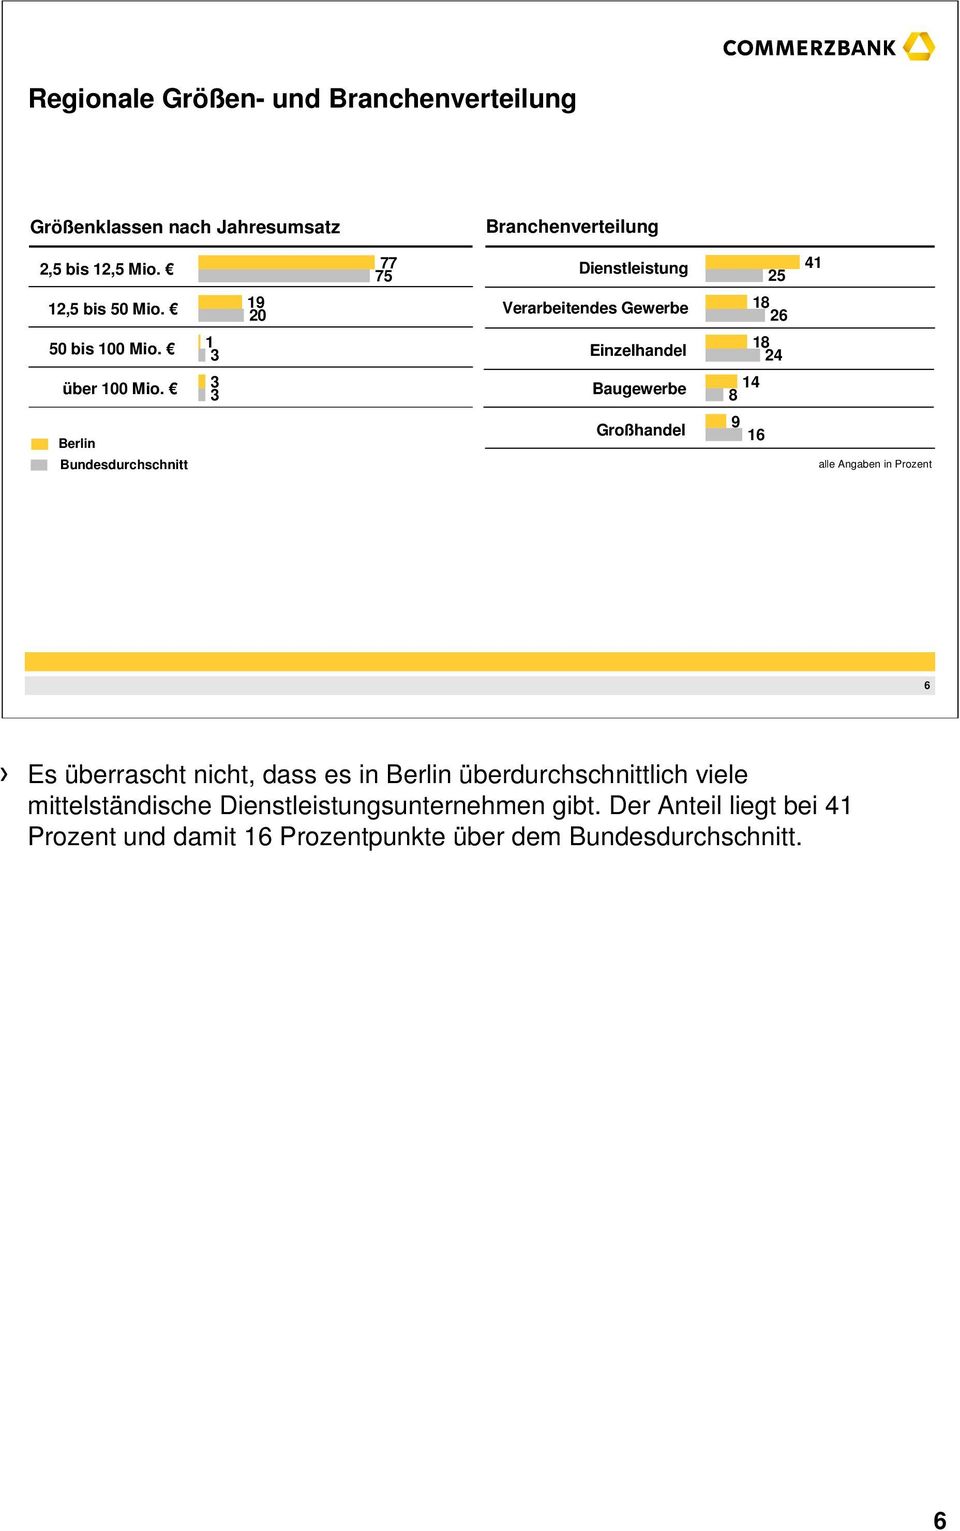 3 3 Baugewerbe 14 8 Berlin Bundesdurchschnitt Großhandel 9 16 alle Angaben in Prozent 6 Es überrascht nicht, dass es in Berlin